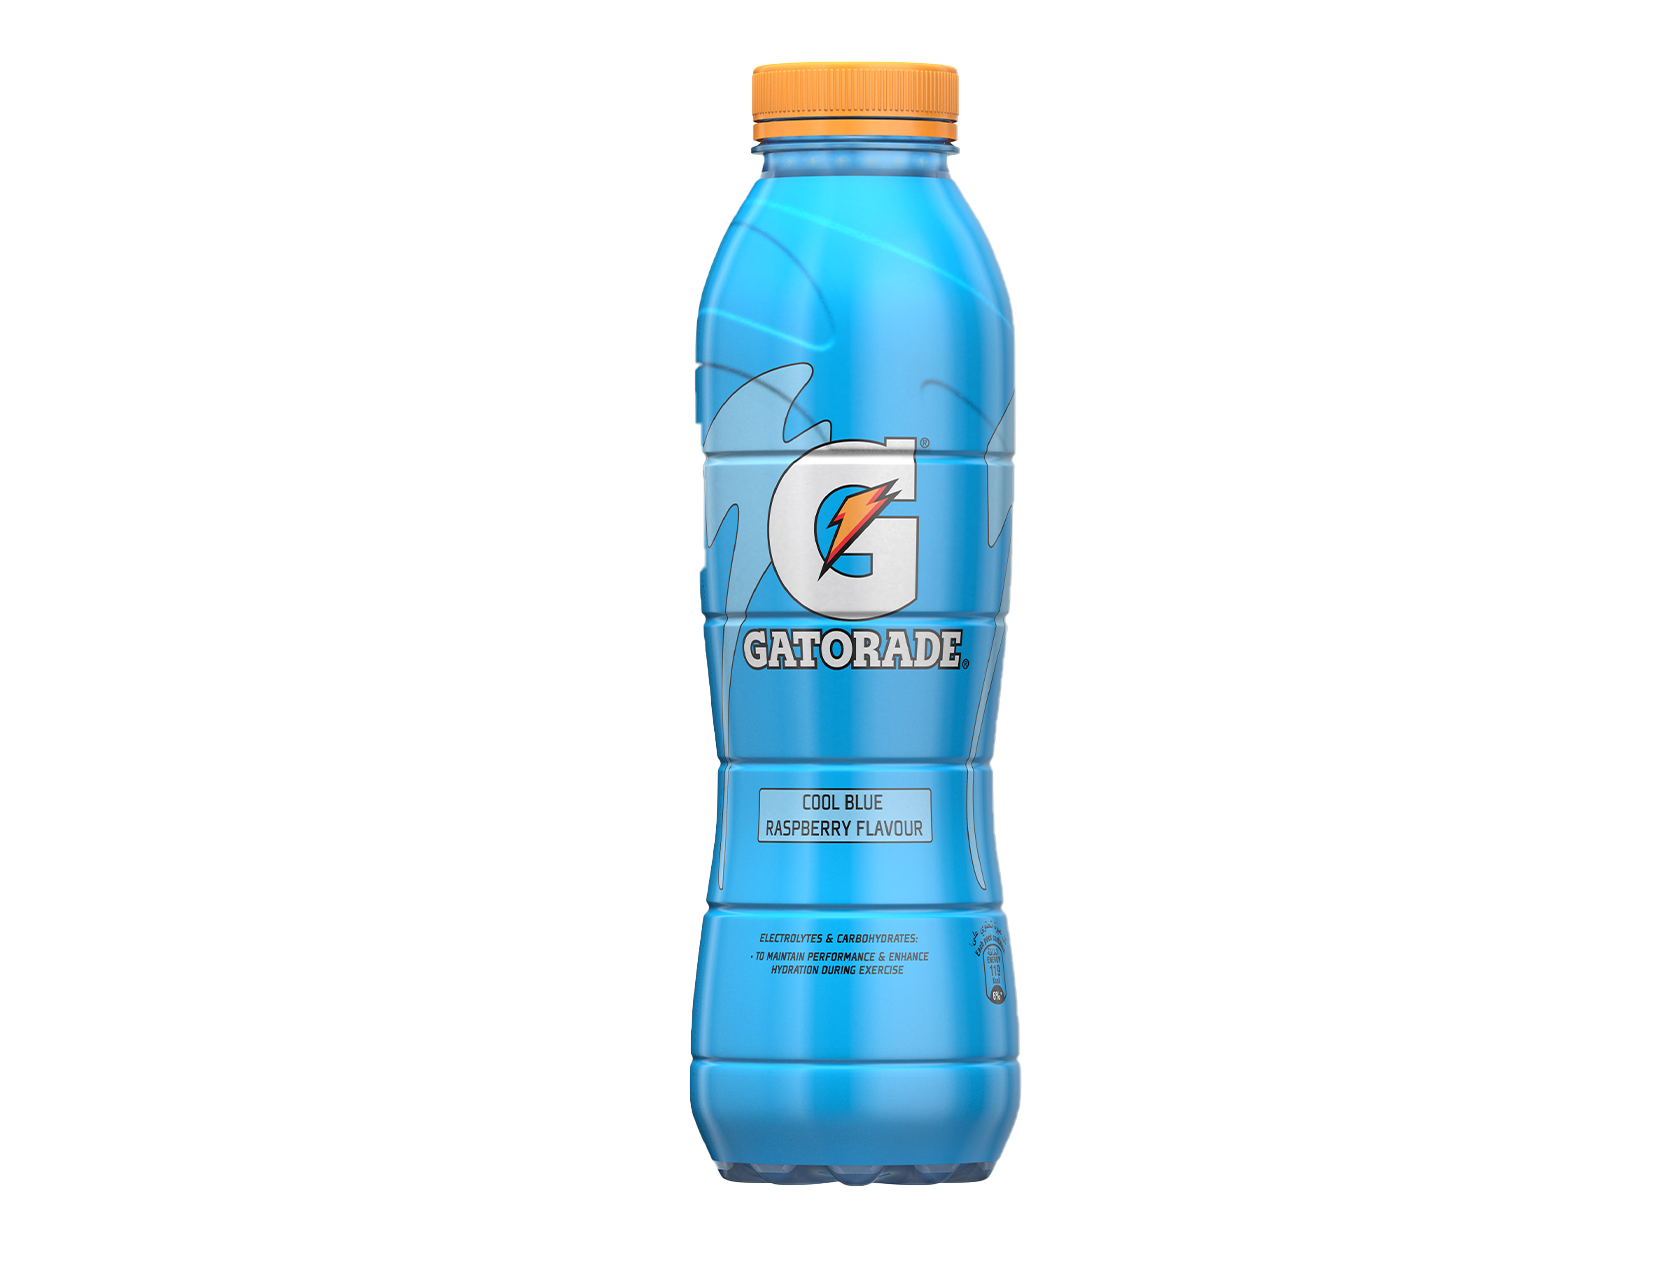 Gatorade Dubai Refreshment Company